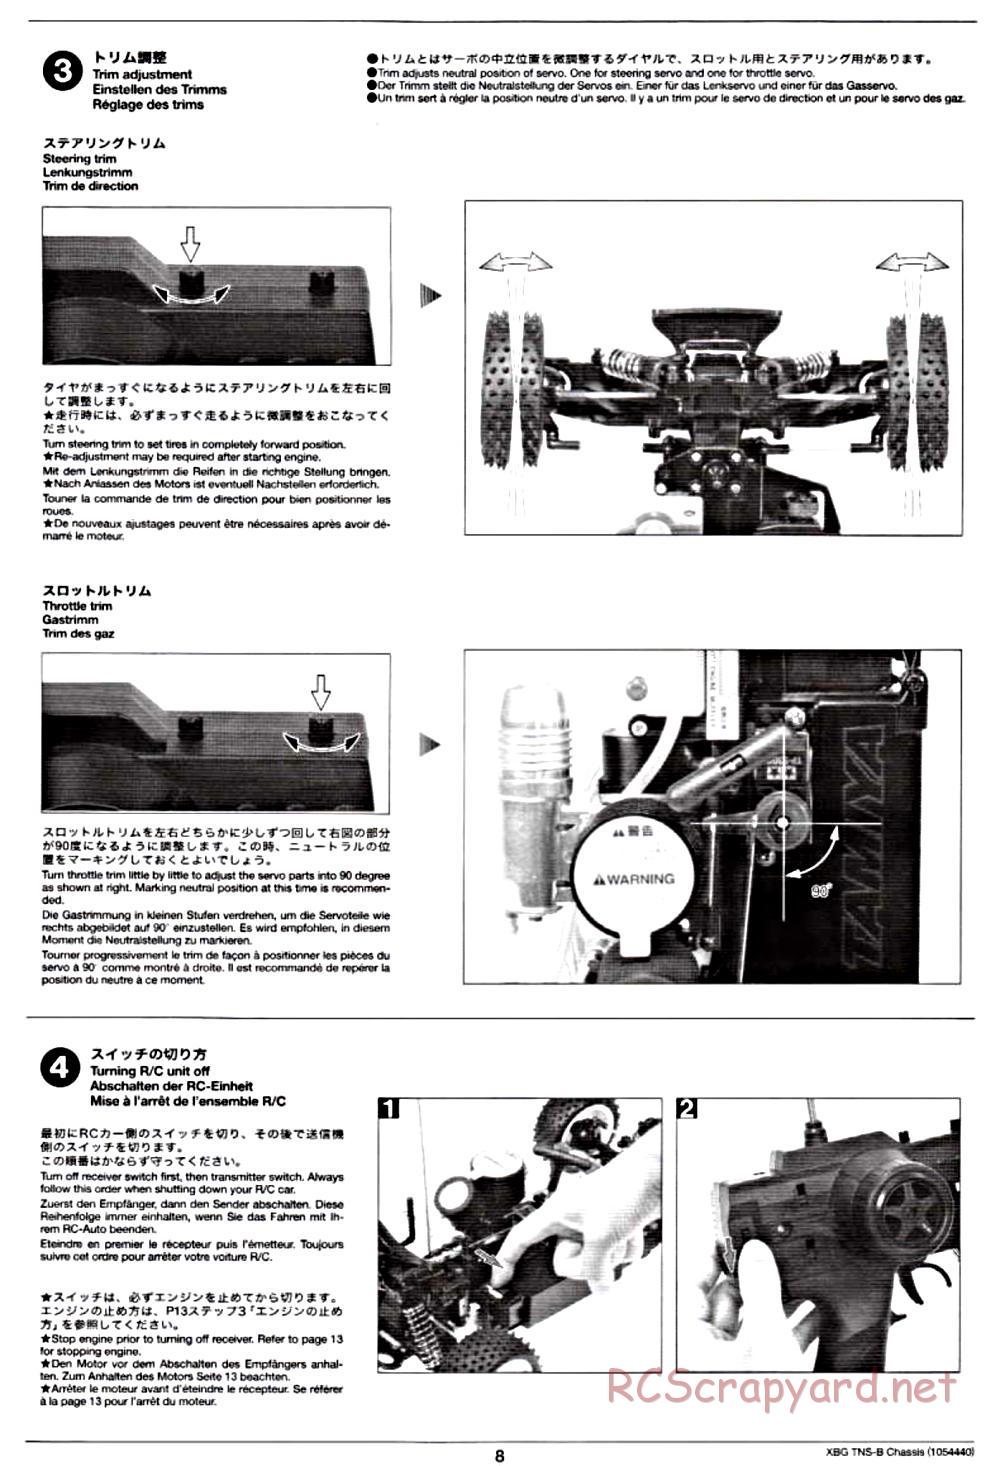 Tamiya - TNS-B Chassis - Manual - Page 8